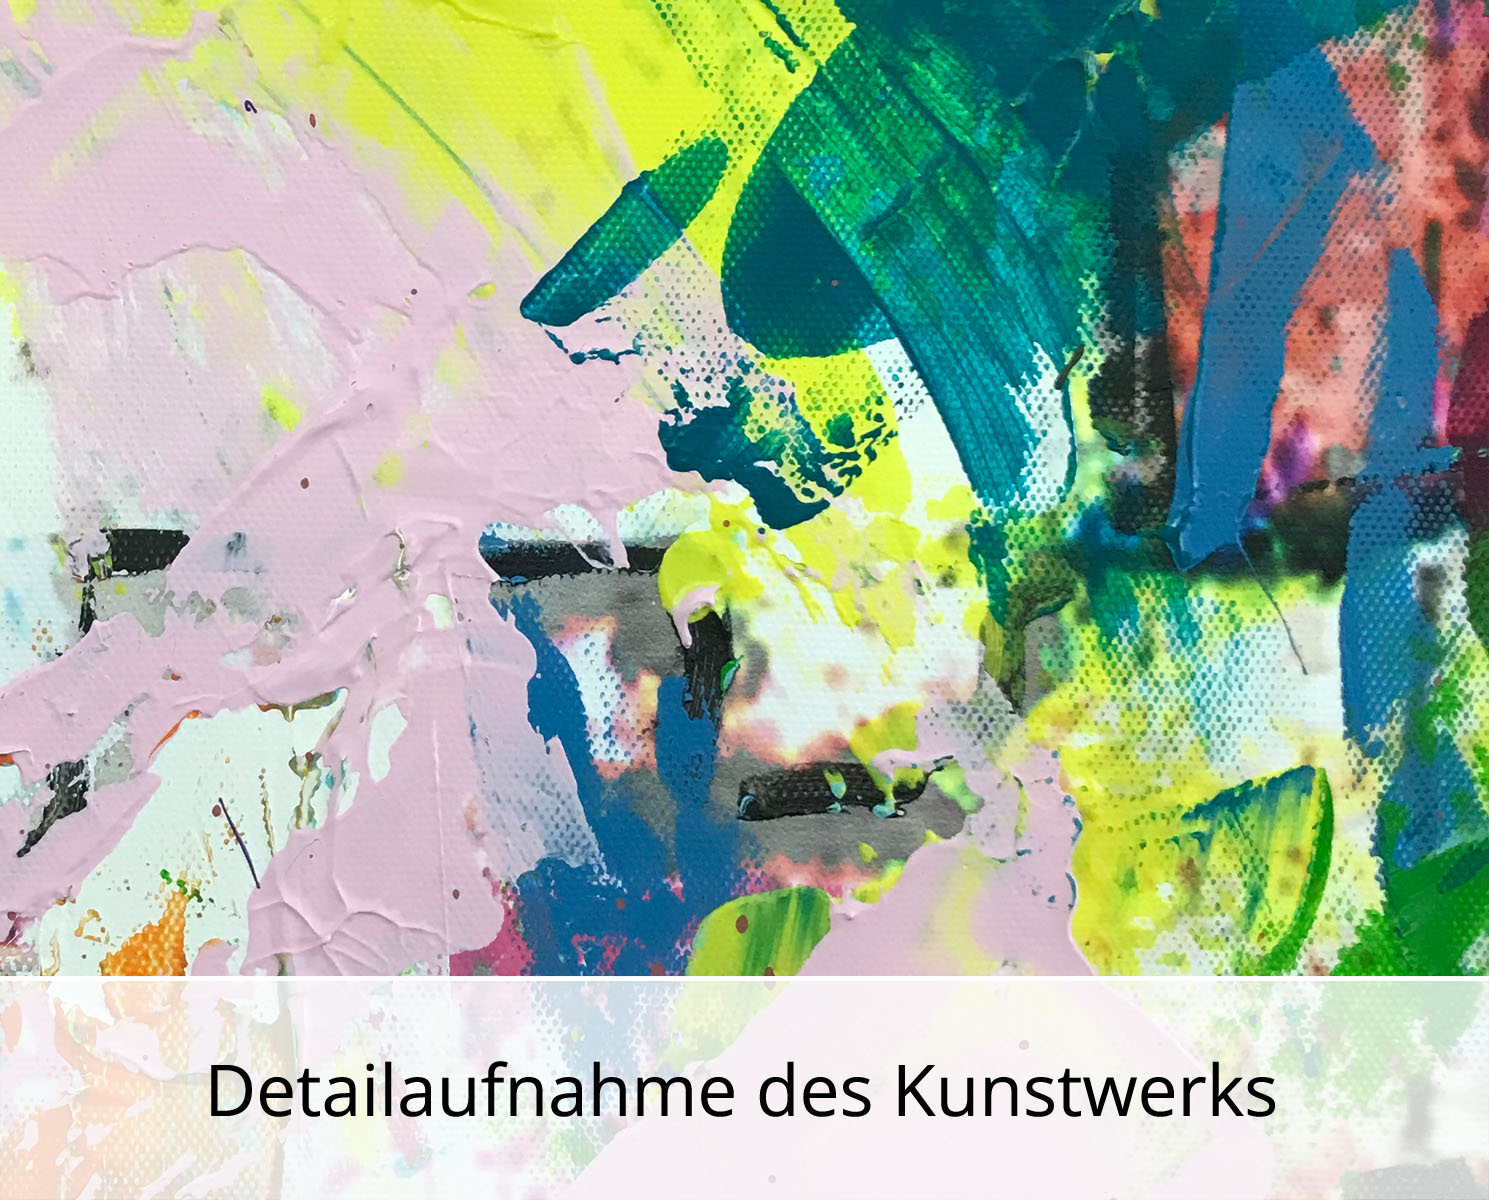 H. Mühlbauer-Gardemin: "Abstrakt", Moderne Pop Art, Original/serielles Unikat